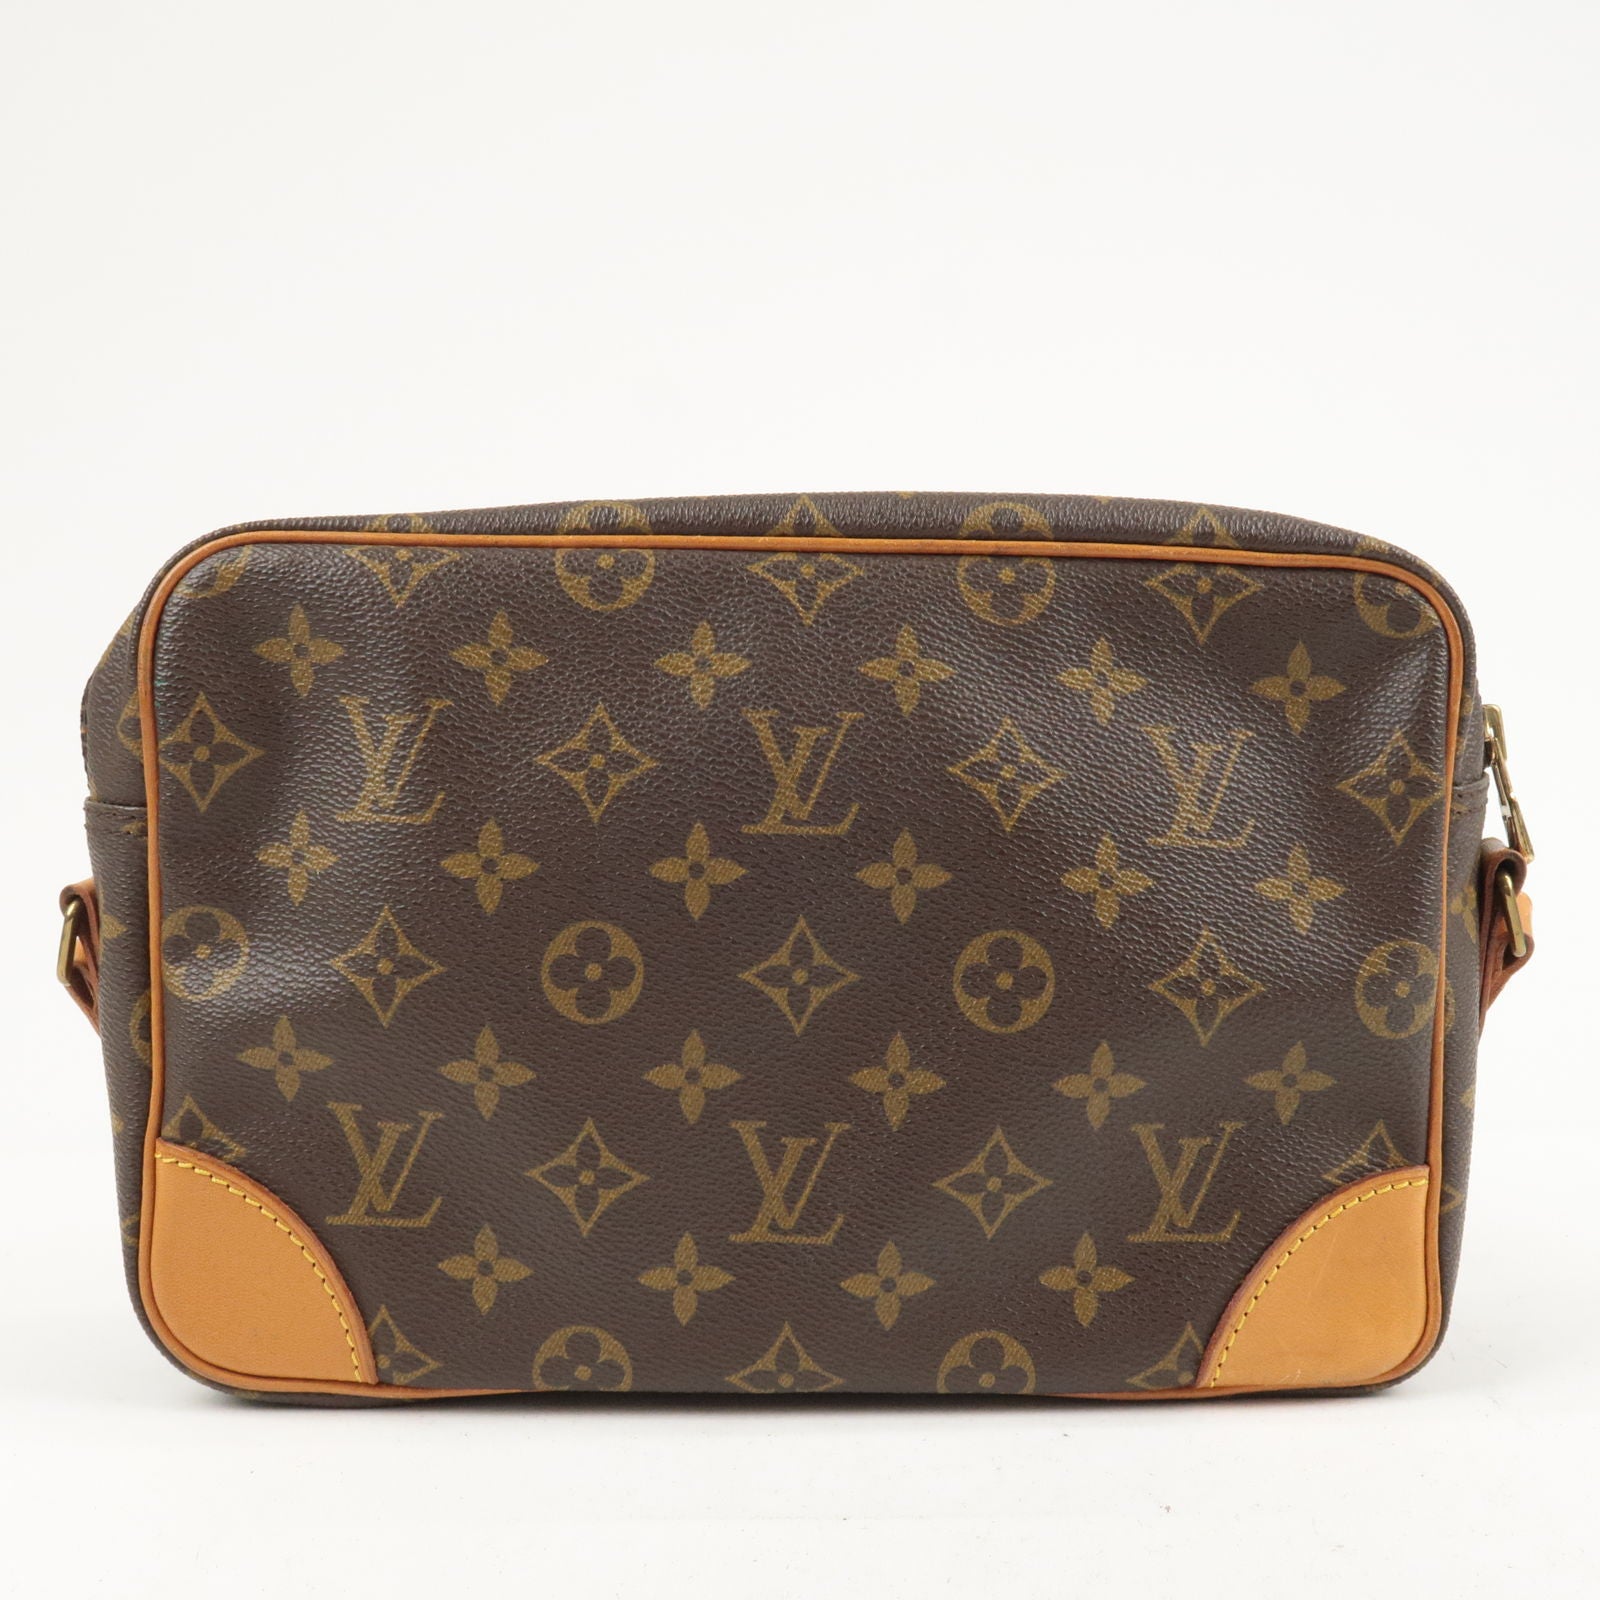 Sold at Auction: Louis Vuitton, LOUIS VUITTON MESSENGER SHOULDER BAG